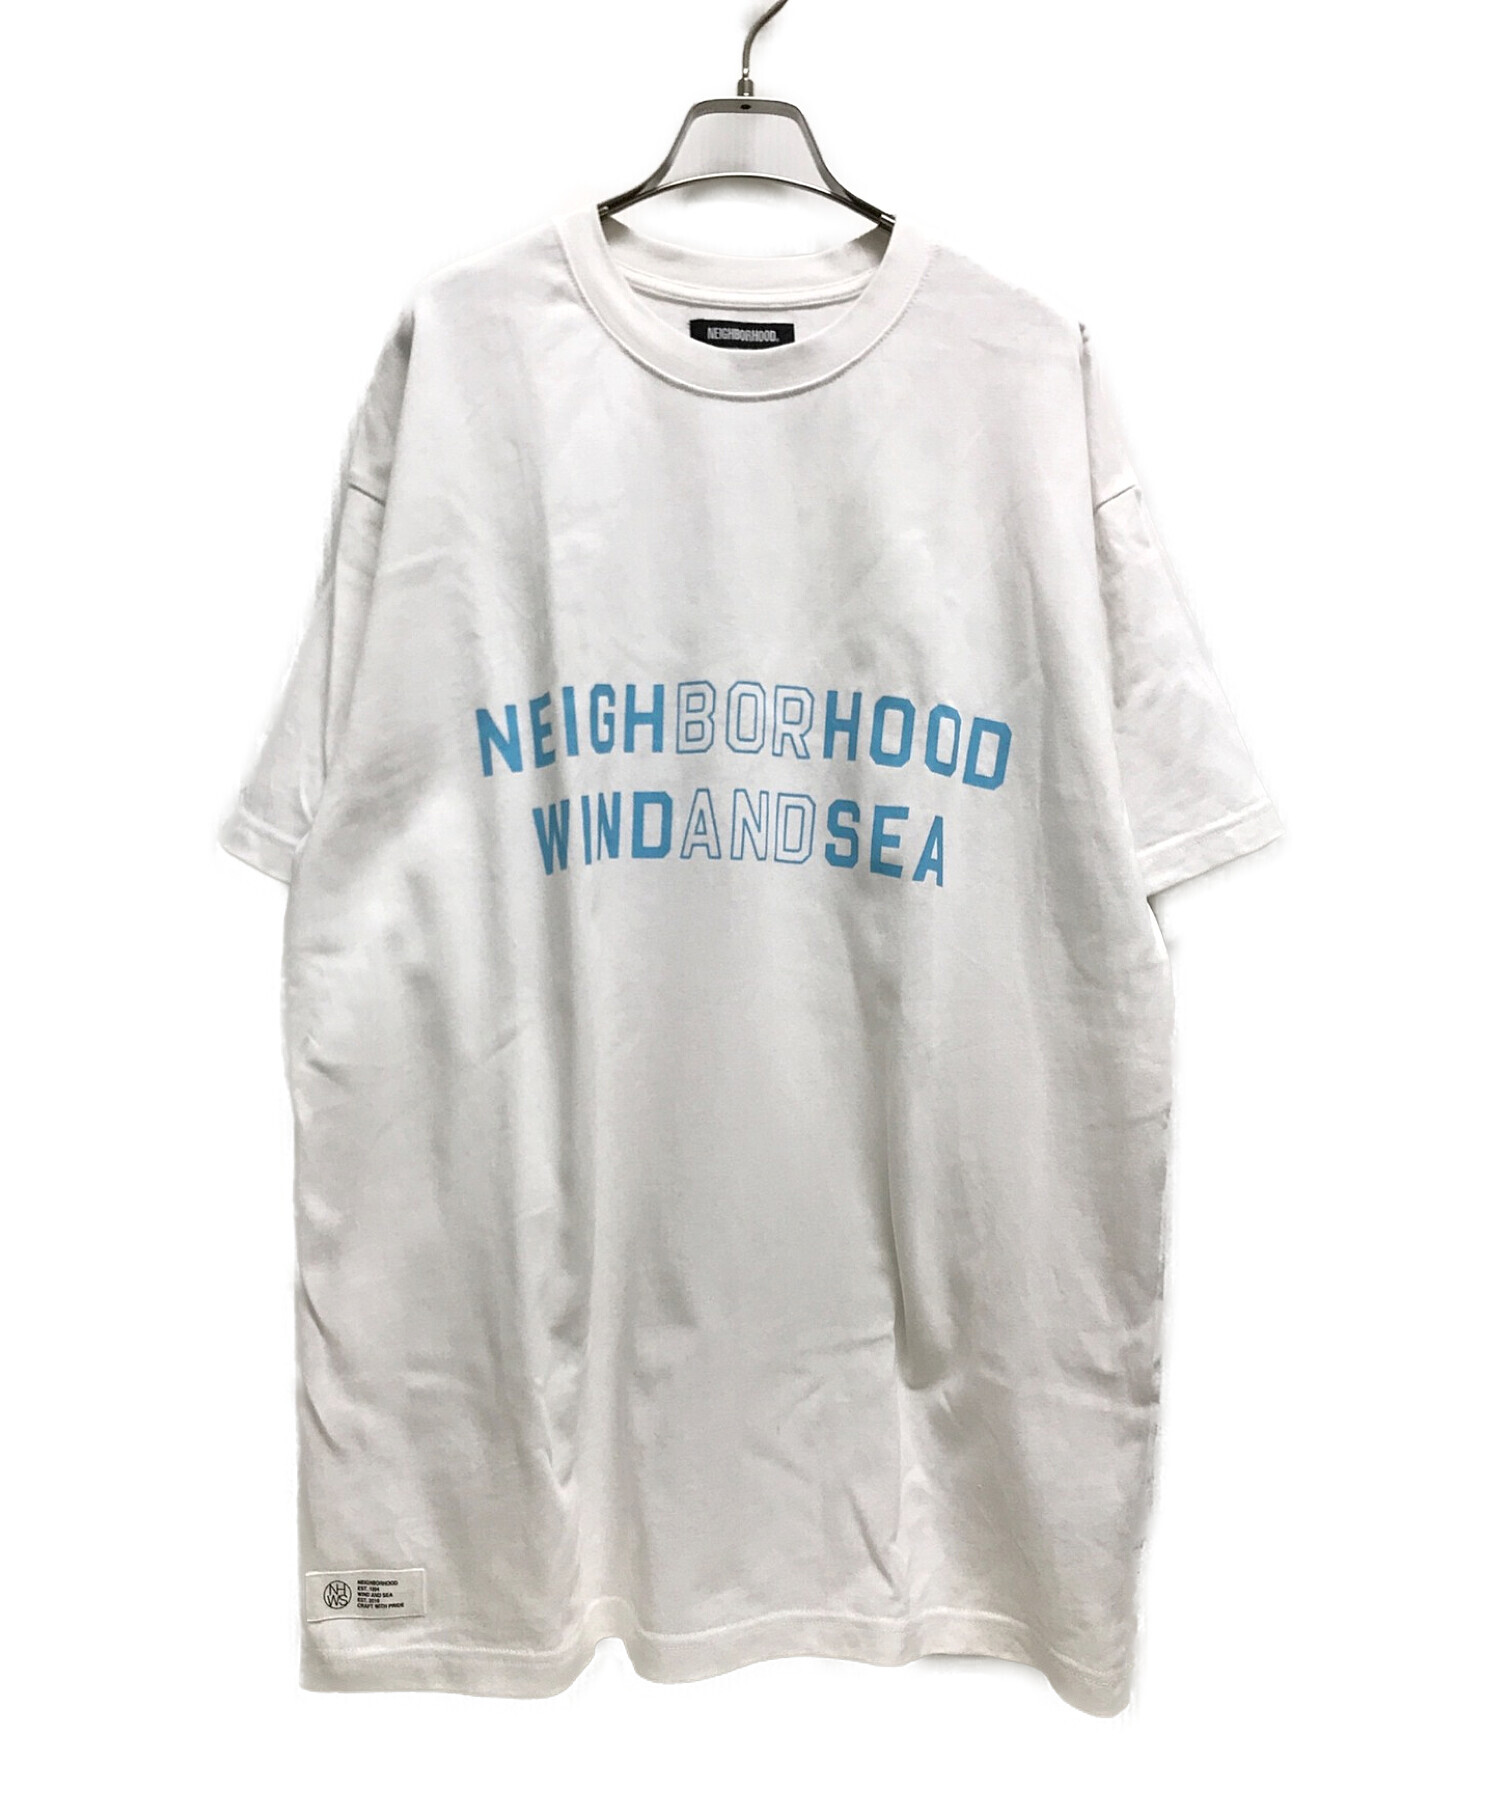 NEIGHBORHOOD×WIND AND SEA (ネイバーフッド×ウィンダンシー) NHWDS-3/C-TEE.SS Tシャツ ホワイト  サイズ:XL